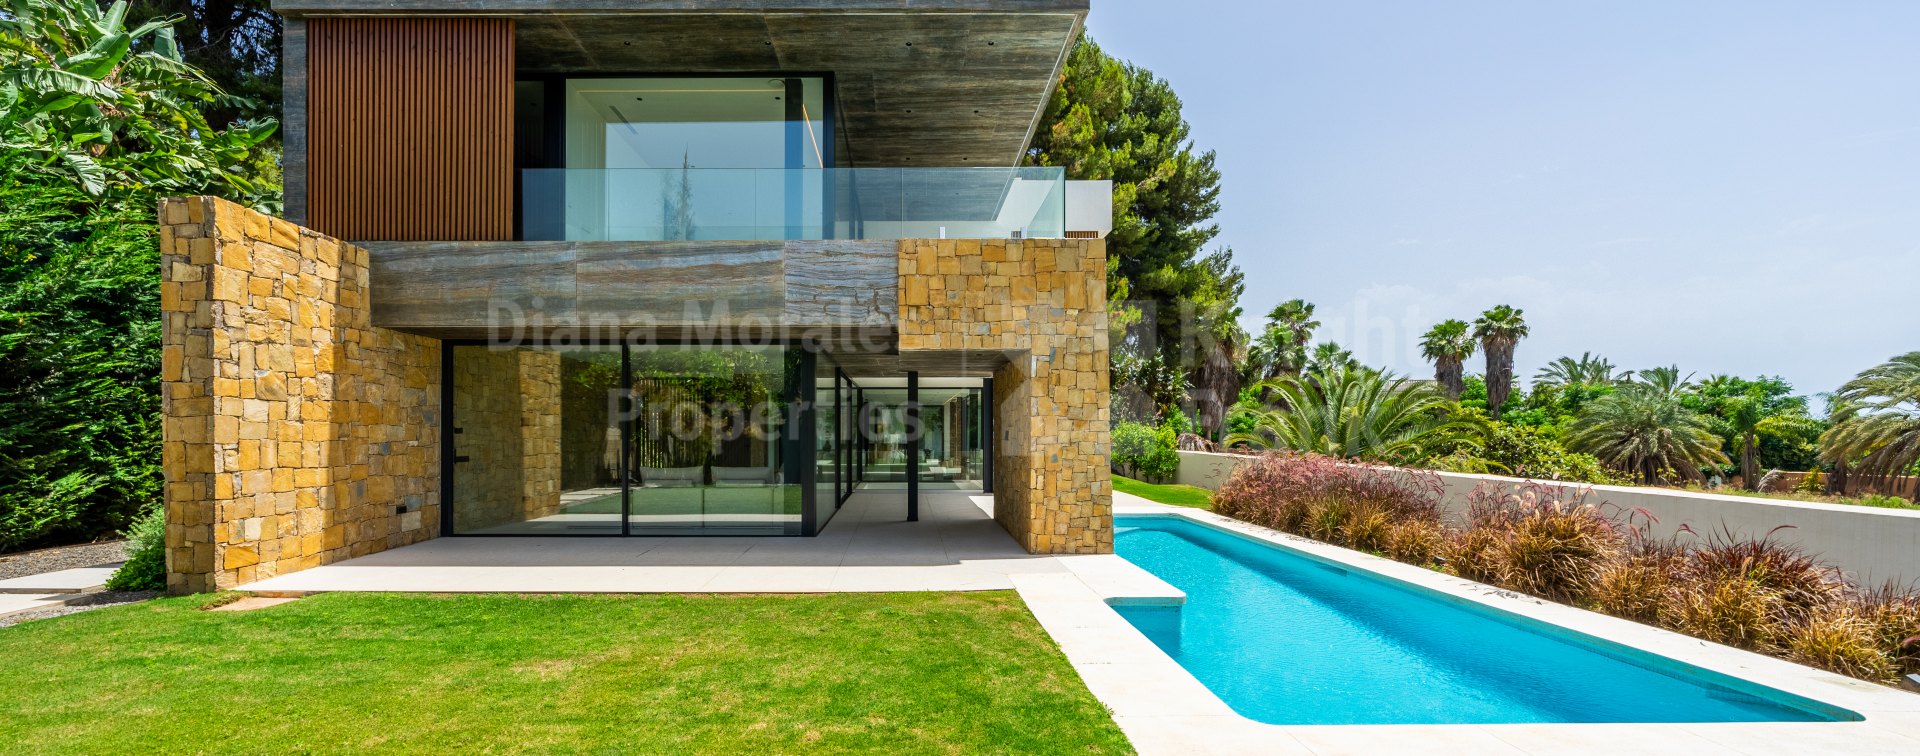 Cortijo Nagüeles, Villa contemporaine flambant neuve sur le Golden Mile